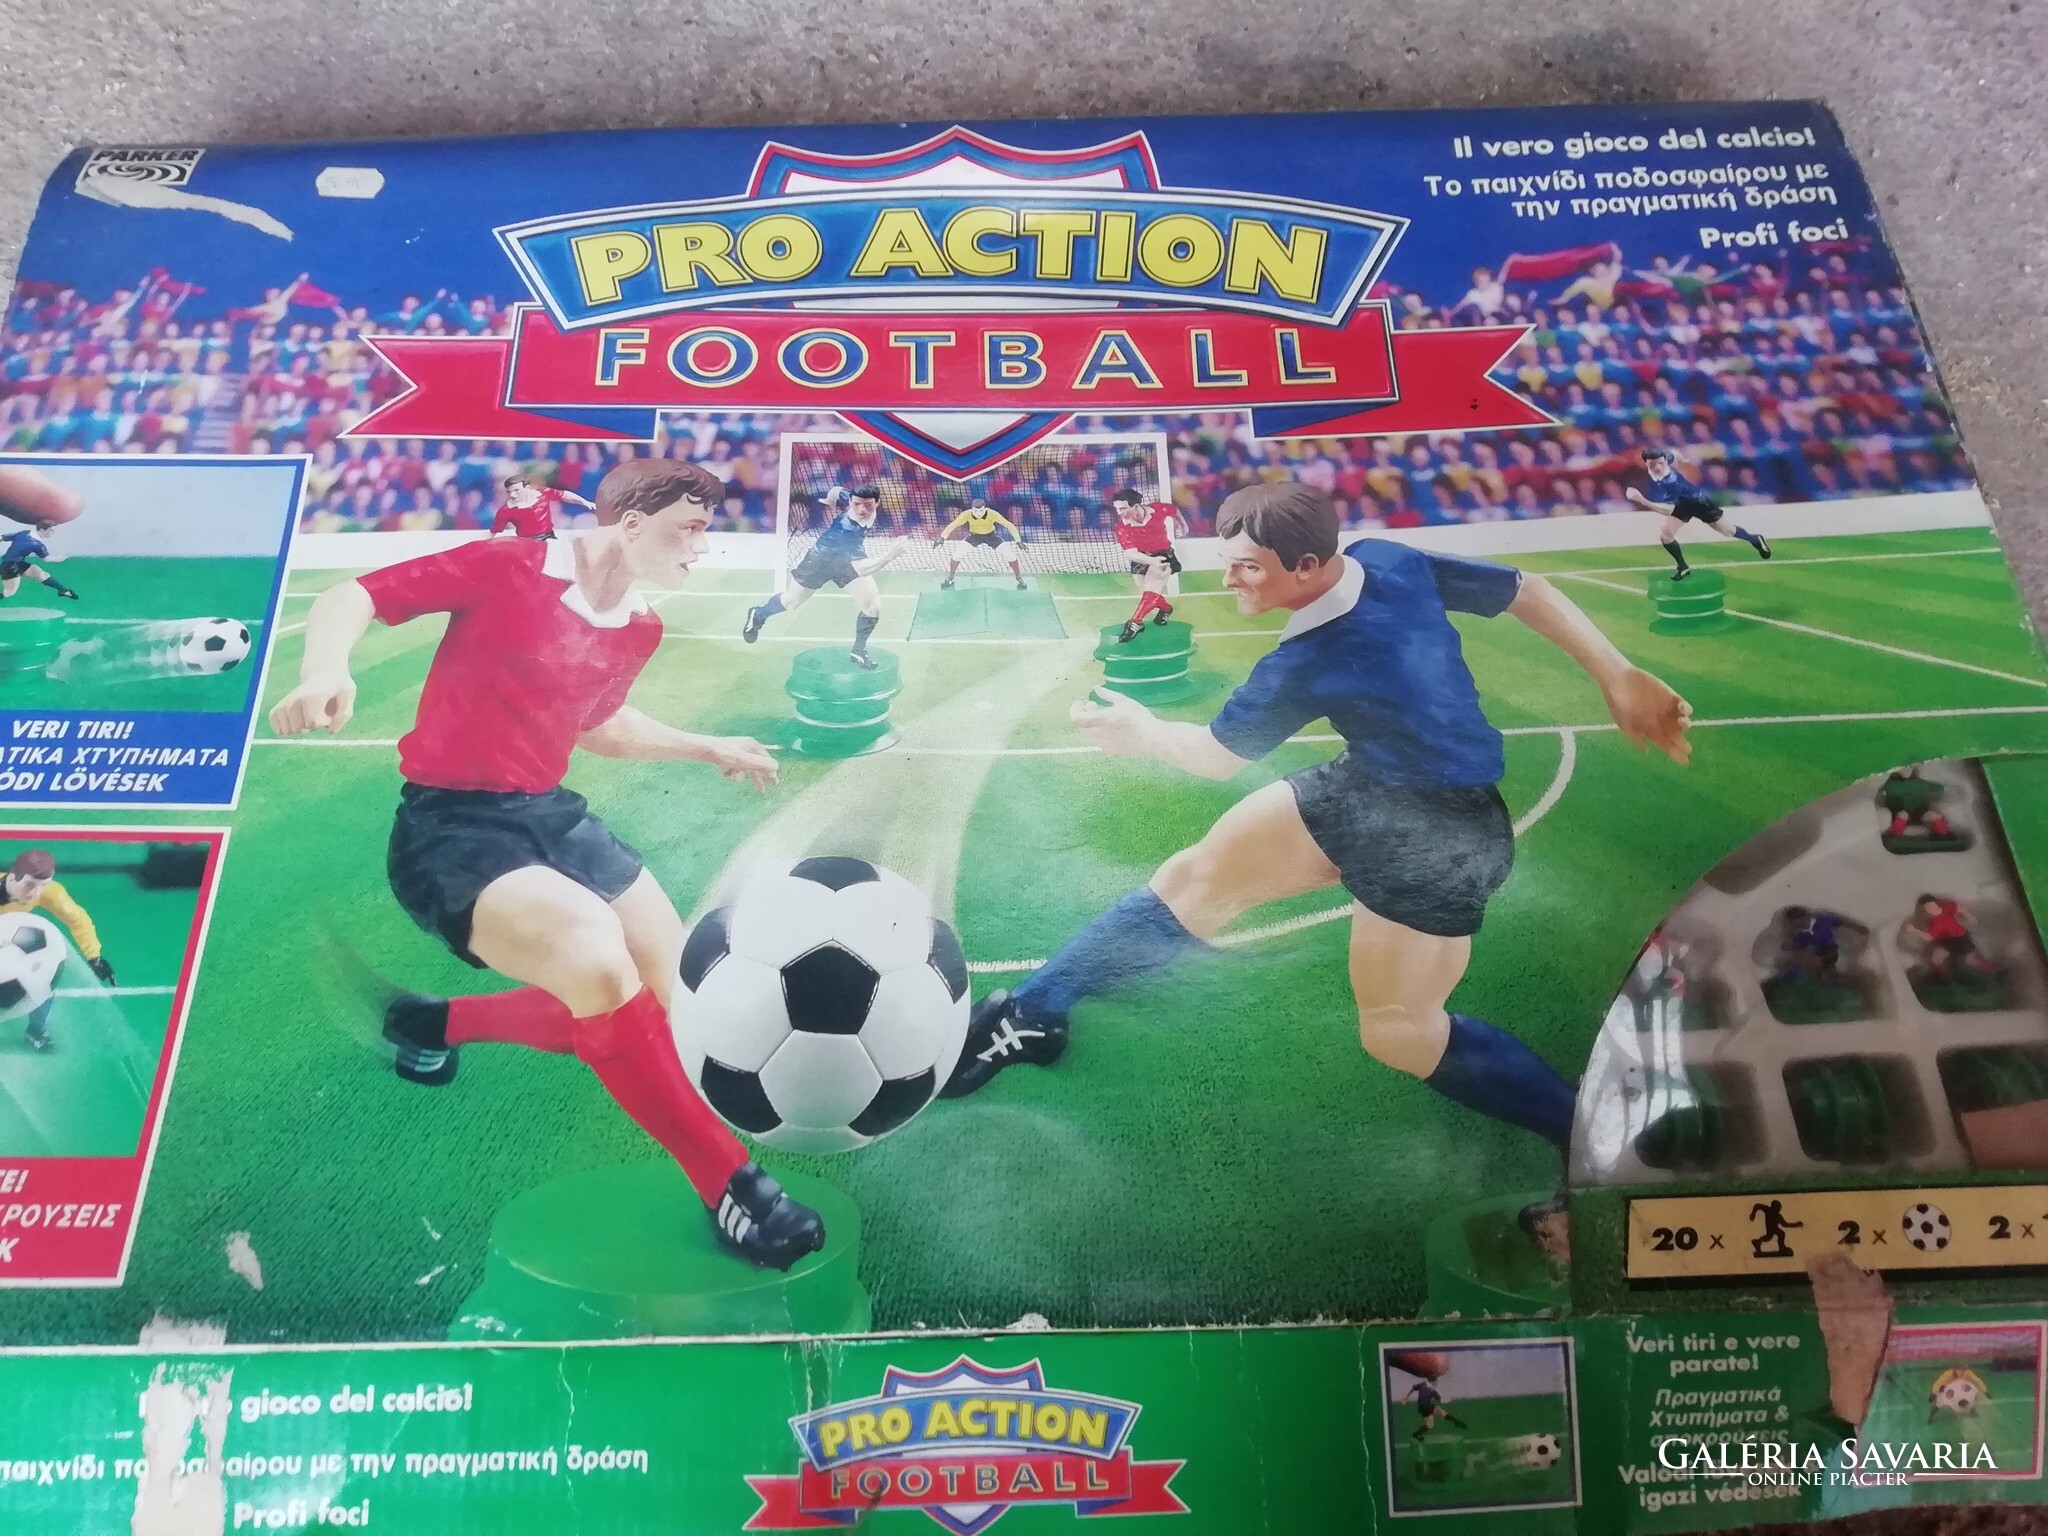 Pro Action Football játék a képeken látható állapotban van - Játék,  szabadidő  Galéria Savaria online piactér - Vásároljon vagy hirdessen  megbízható, színvonalas felületen!